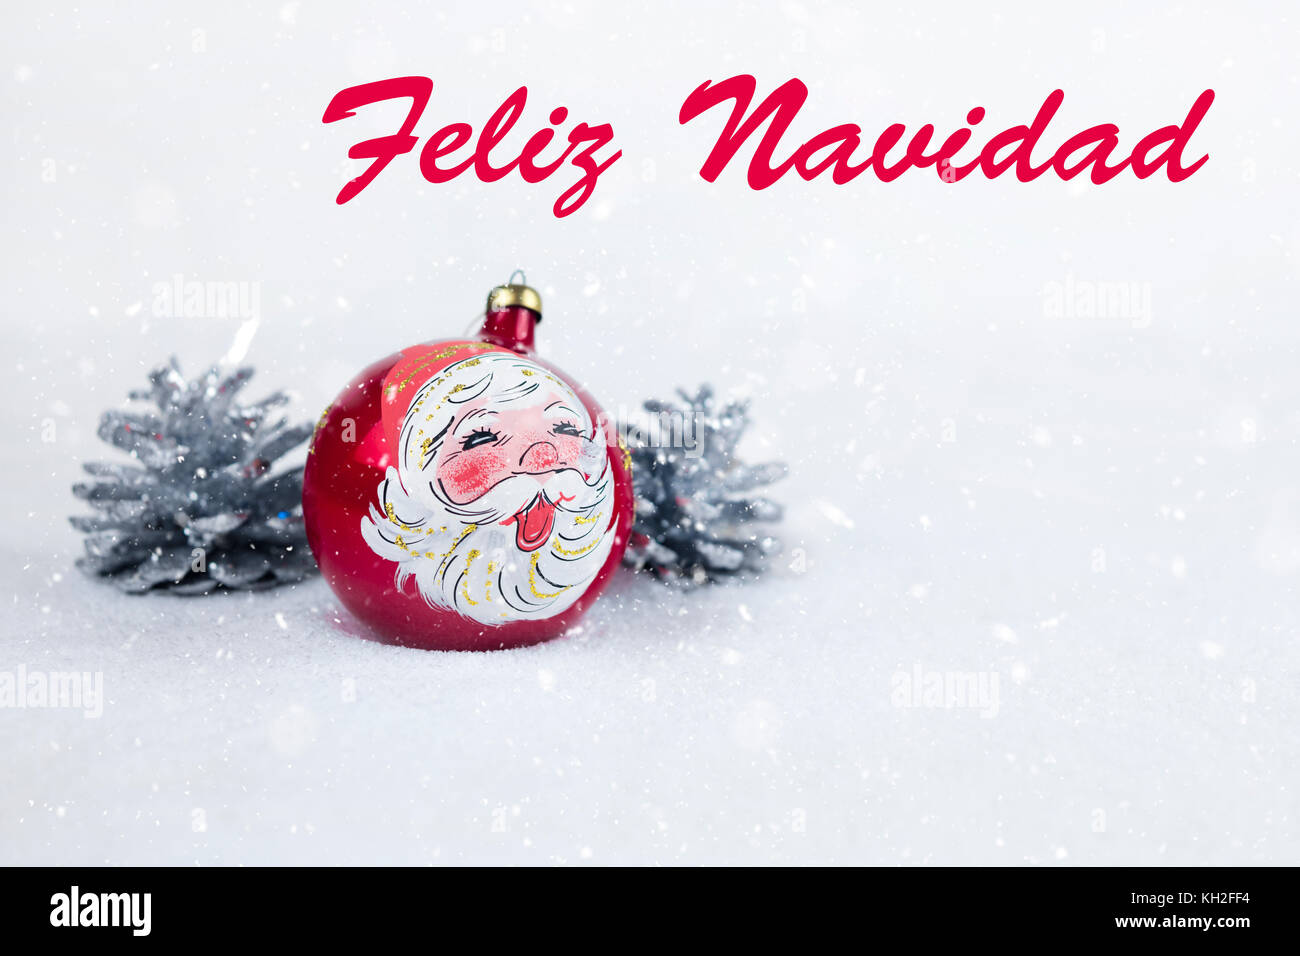 Gruppe von farbigen christmas ball mit Zeichnung von Santa Claus und Kiefern mit Text in Spanisch "Feliz Navidad" im weißen Schnee Hintergrund. Stockfoto